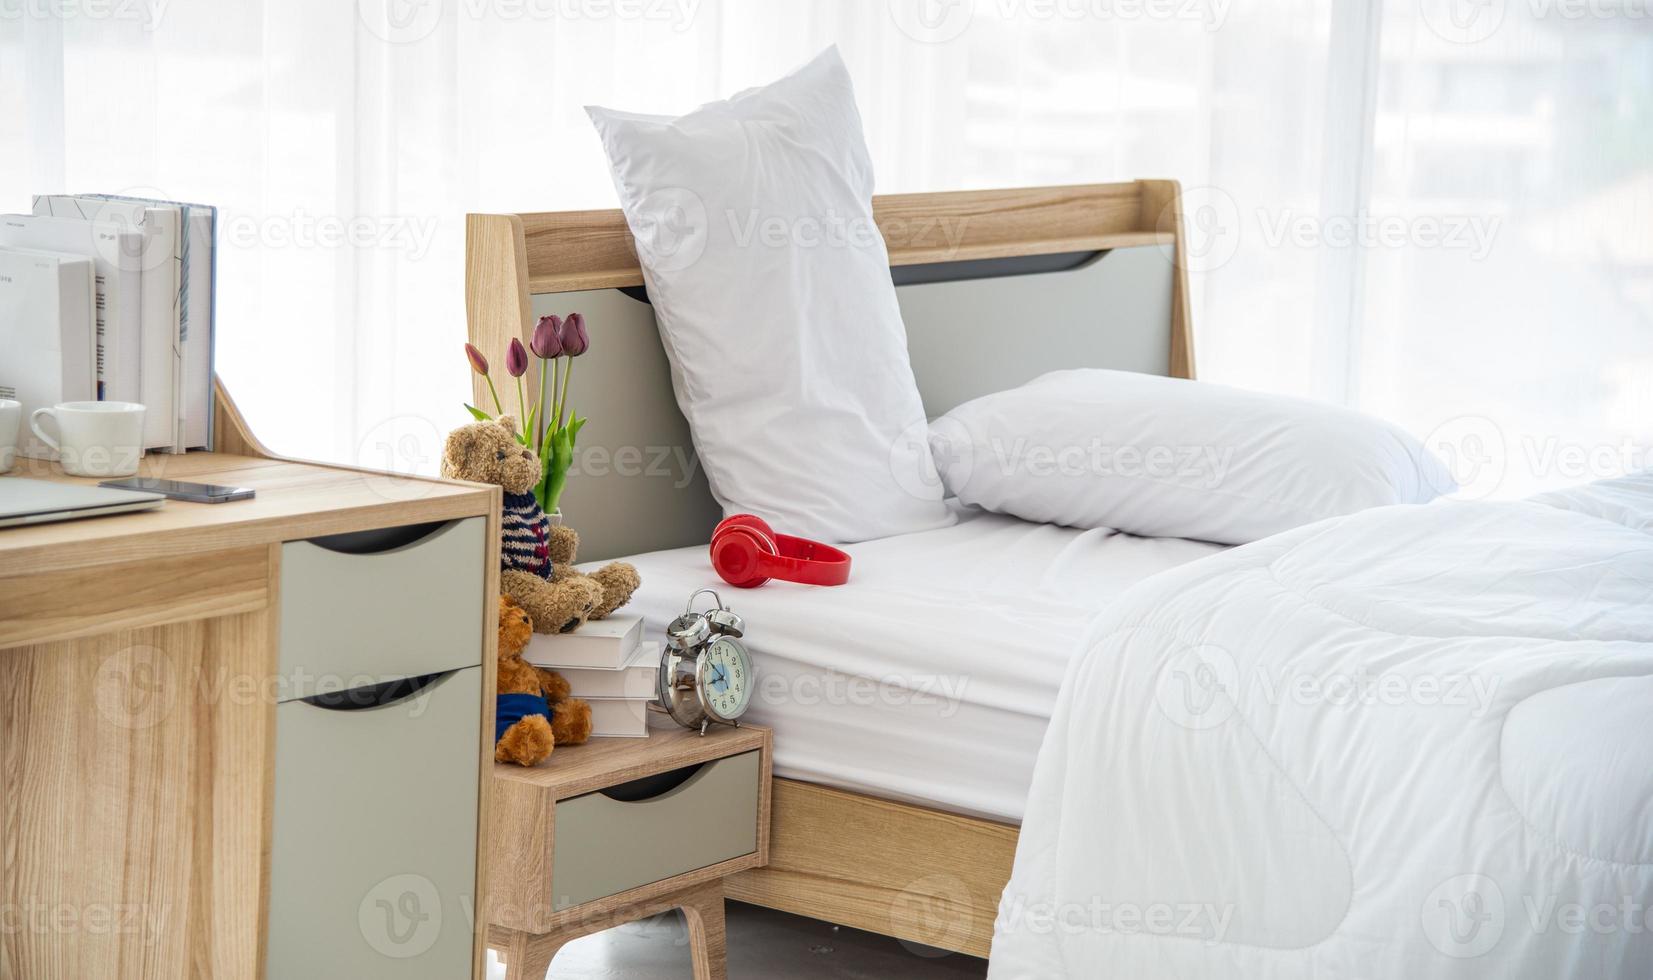 il design moderno o minimale delle camere da letto arredate con un comodo letto matrimoniale, lenzuola bianche come coperte, cuscini e mobili in legno foto